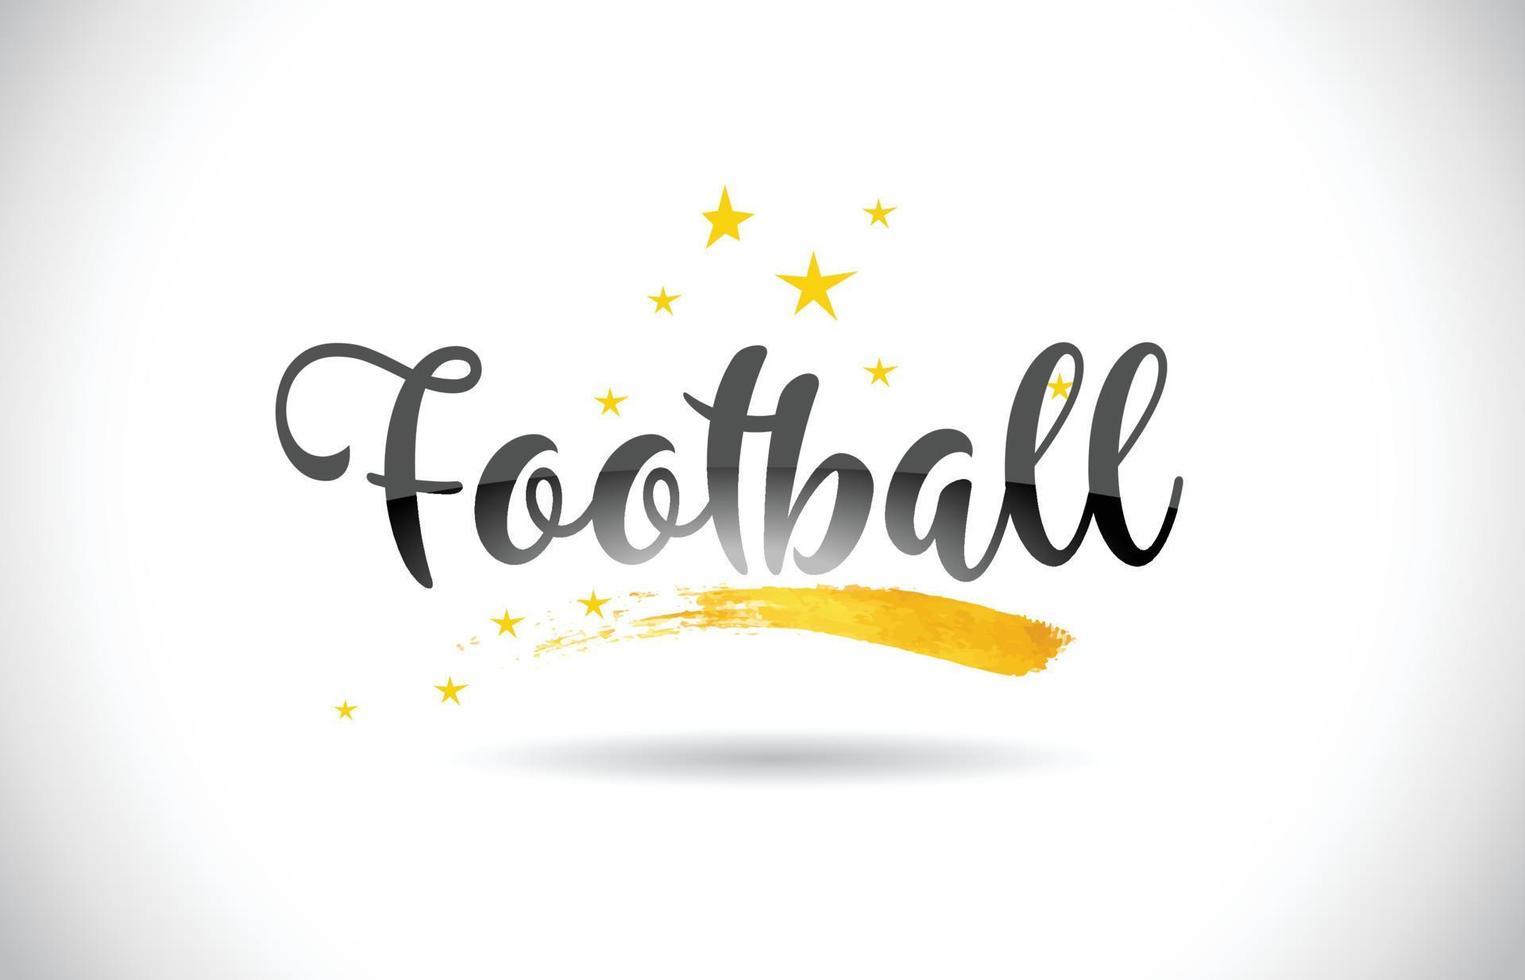 voetbal woord vector tekst met gouden sterren trail en handgeschreven gebogen lettertype.